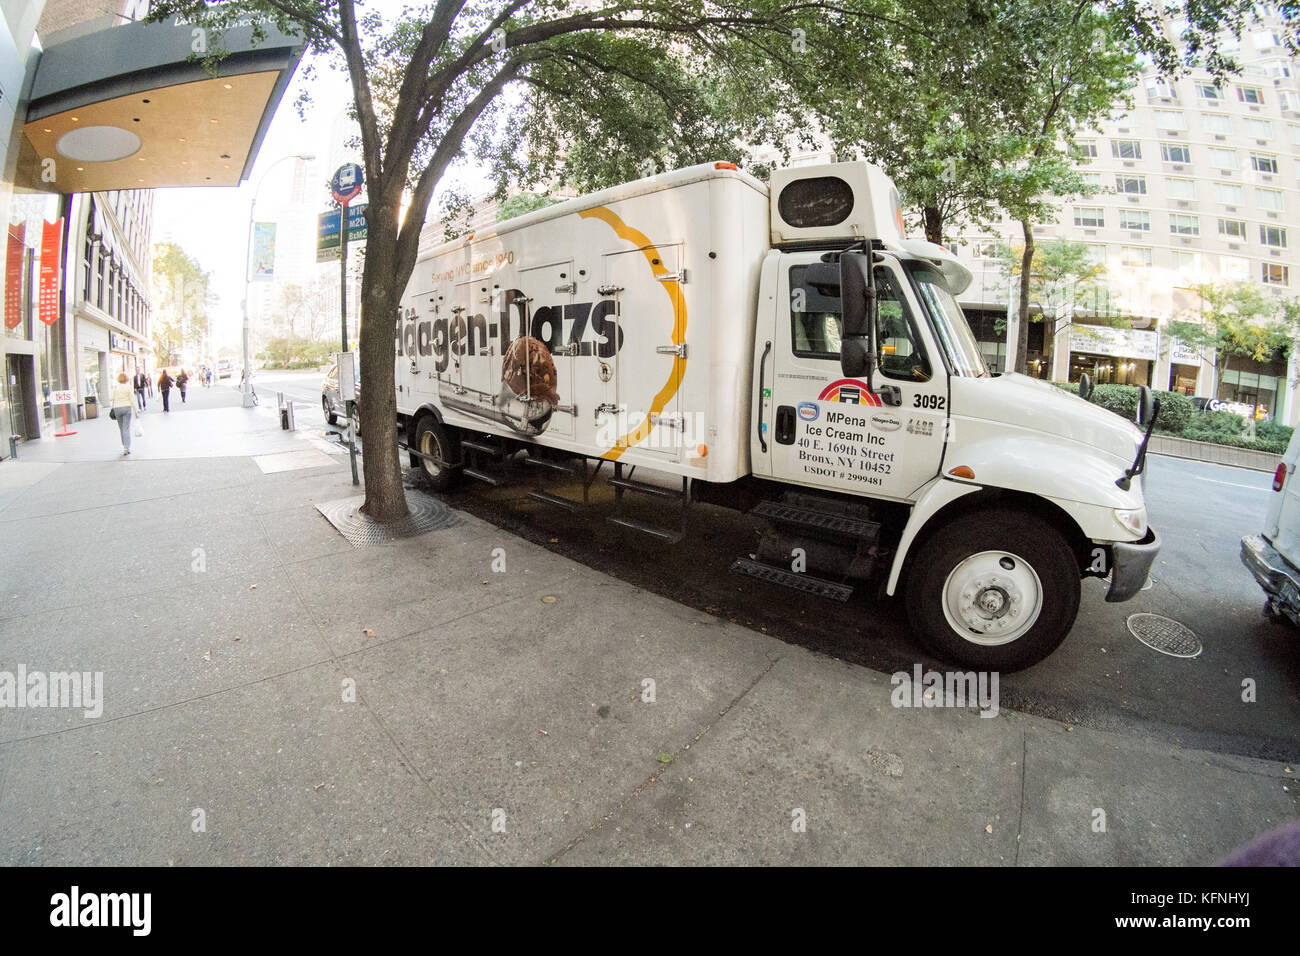 Hagen-Dazs ice cream delivery box truck, New York City, United States of America. Stock Photo